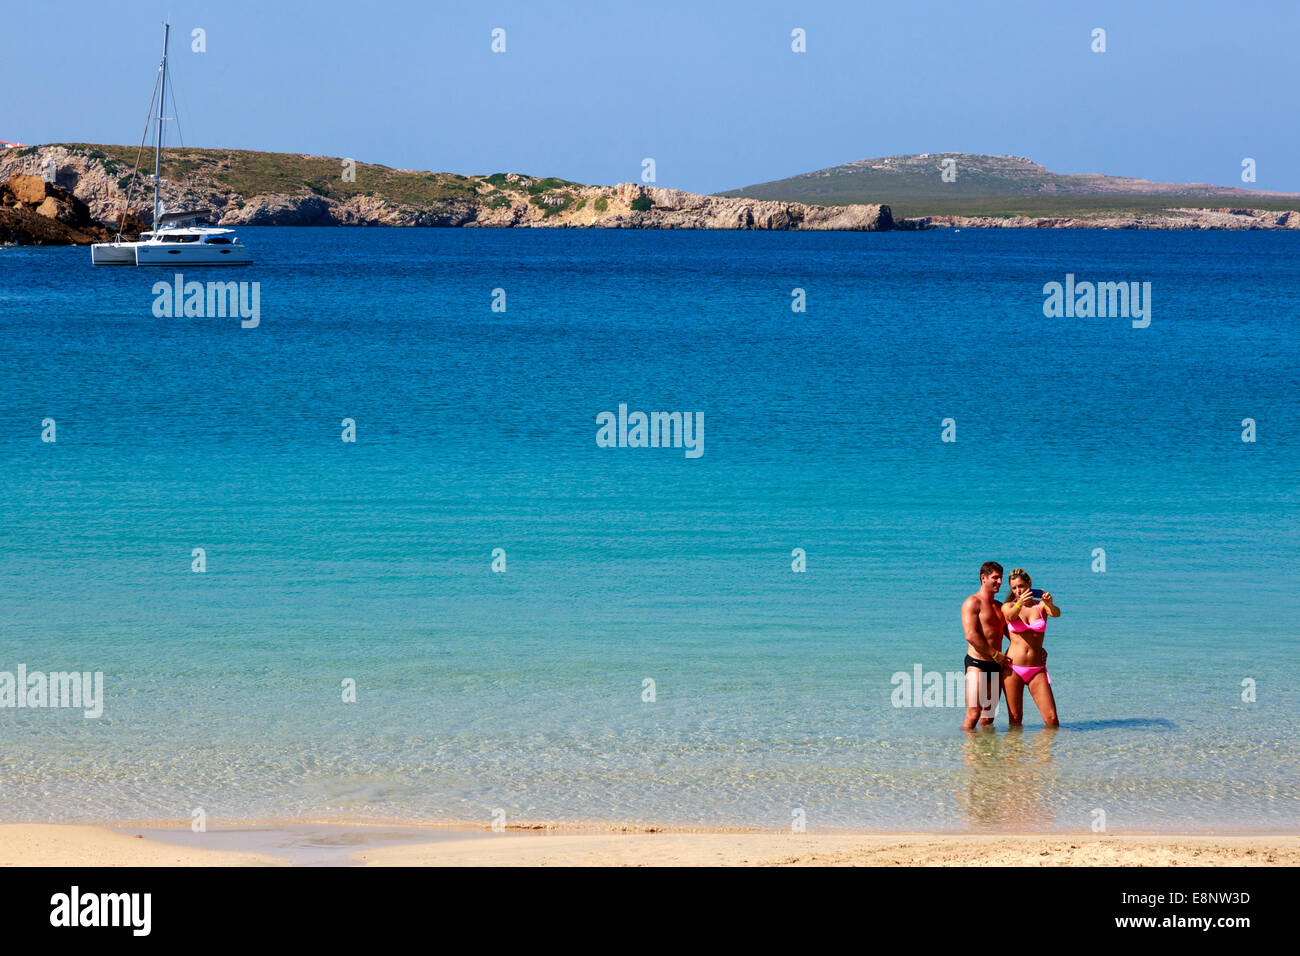 El hombre y la mujer de vacaciones teniendo una 'fotografía' elfie mientras está de pie en el mar en Arenal d'en Castell, Menorca, España Foto de stock